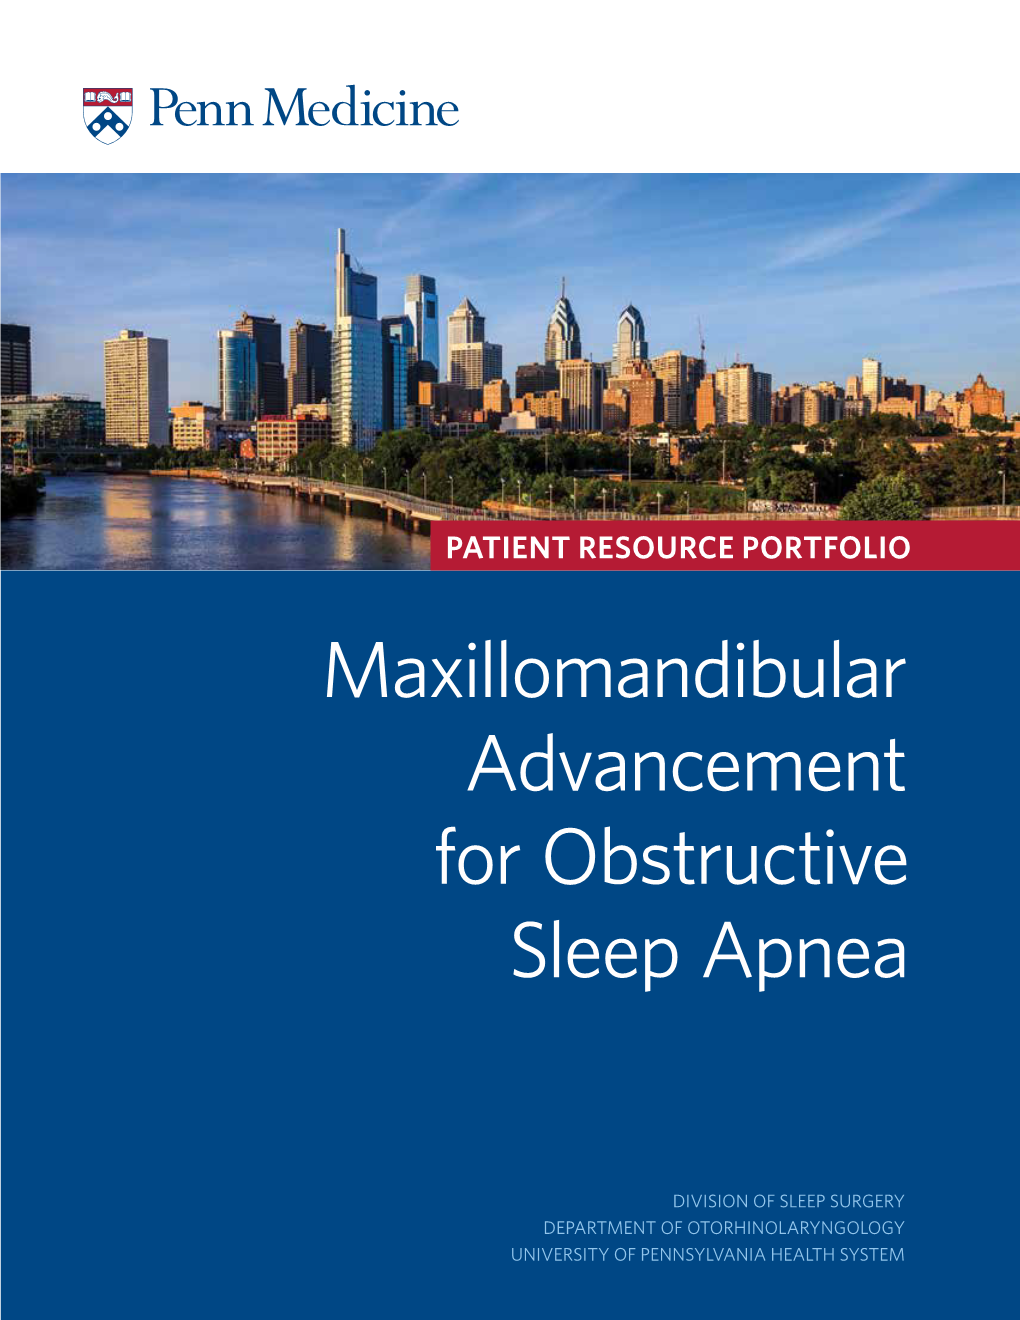 Maxillomandibular Advancement for Obstructive Sleep Apnea